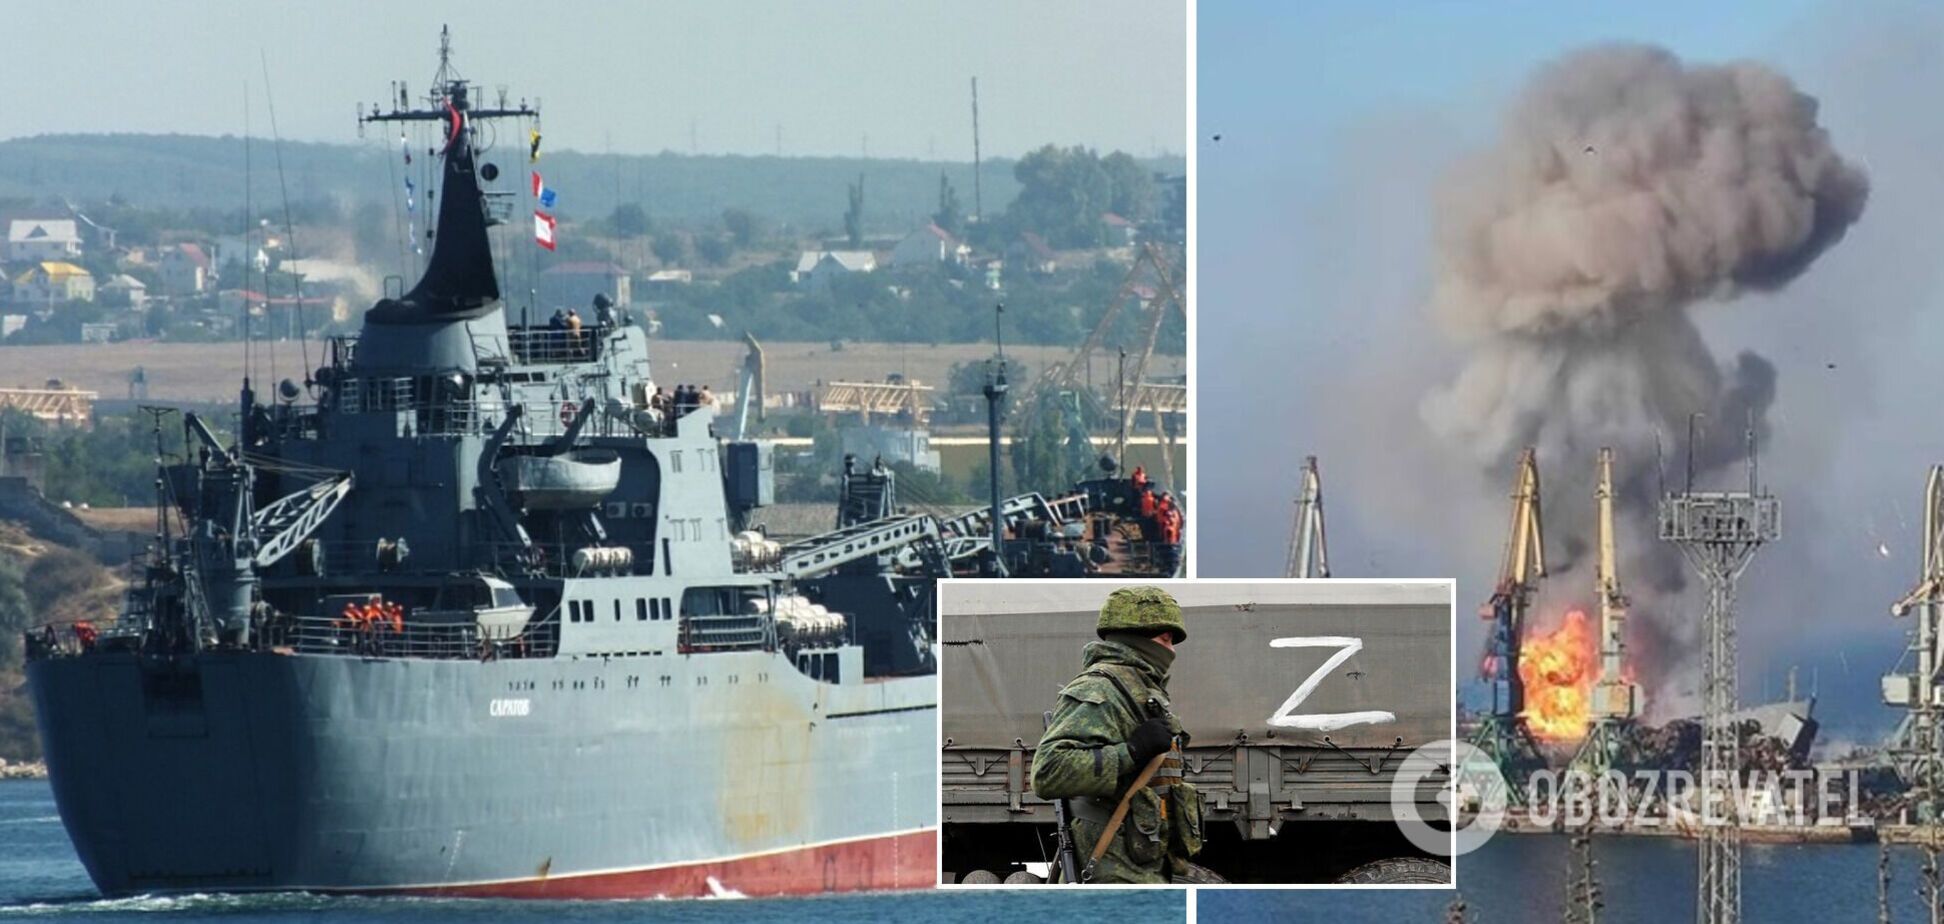 Після знищення корабля 'Саратов' РФ не впевнена у можливості проведення операцій біля узбережжя України – британська розвідка